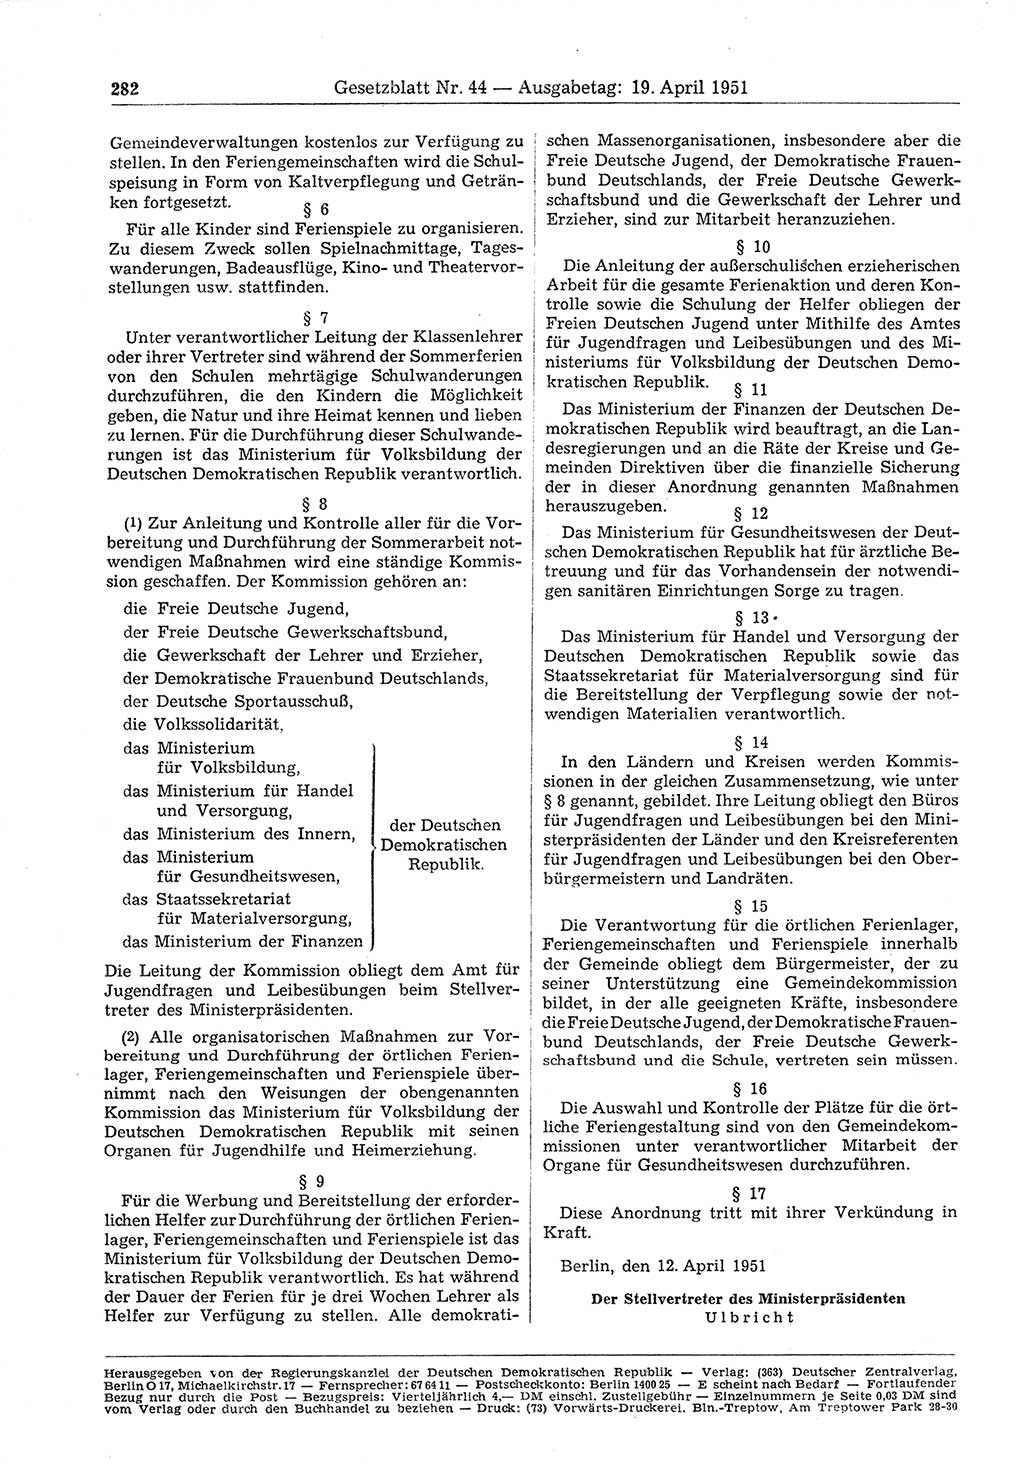 Gesetzblatt (GBl.) der Deutschen Demokratischen Republik (DDR) 1951, Seite 282 (GBl. DDR 1951, S. 282)